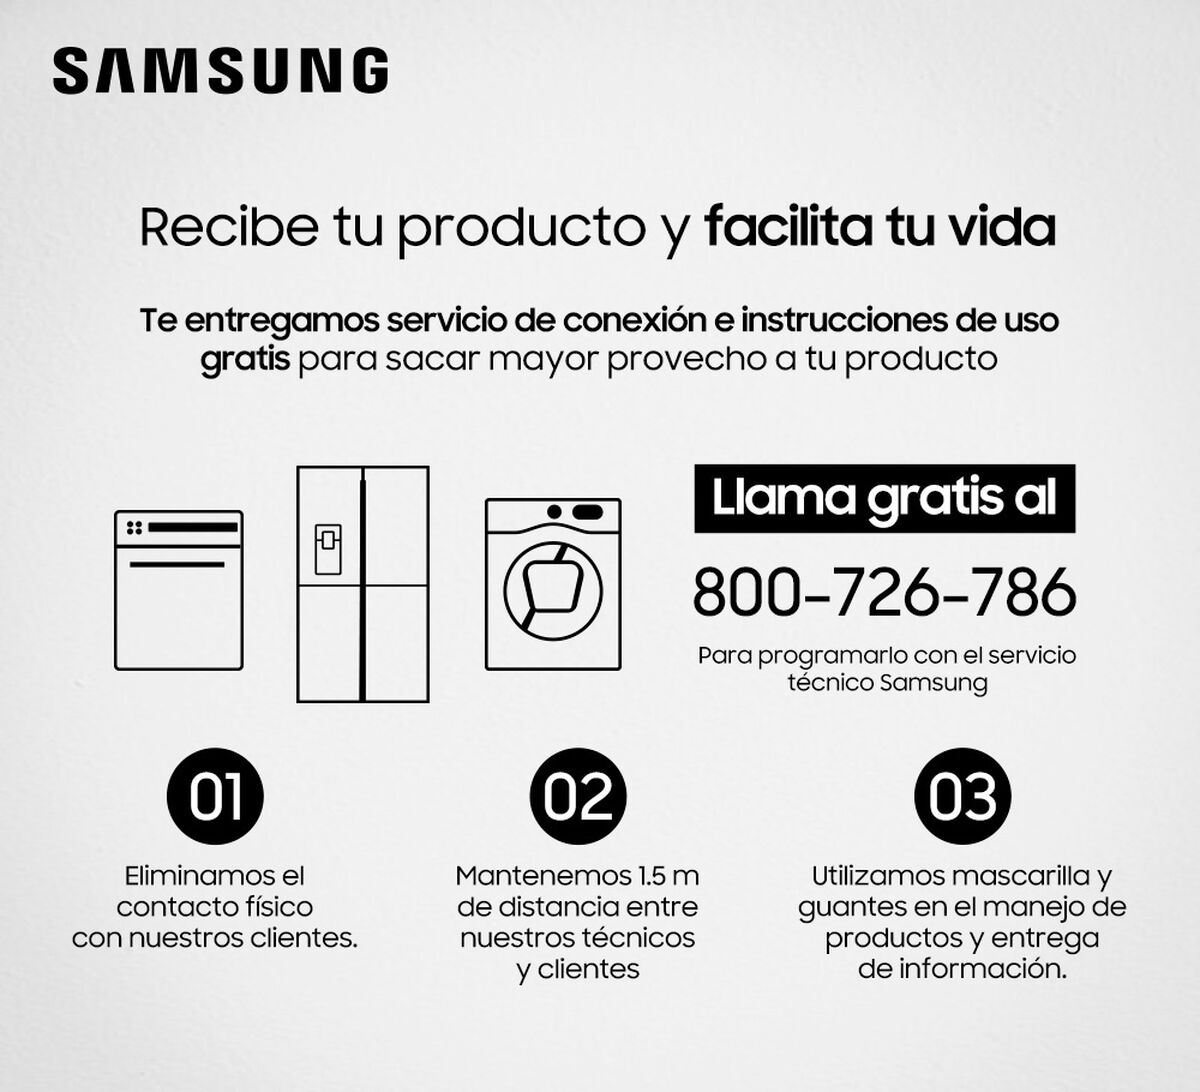 Lavadora Automática Samsung WW10J6410CW1 10,5 kg.